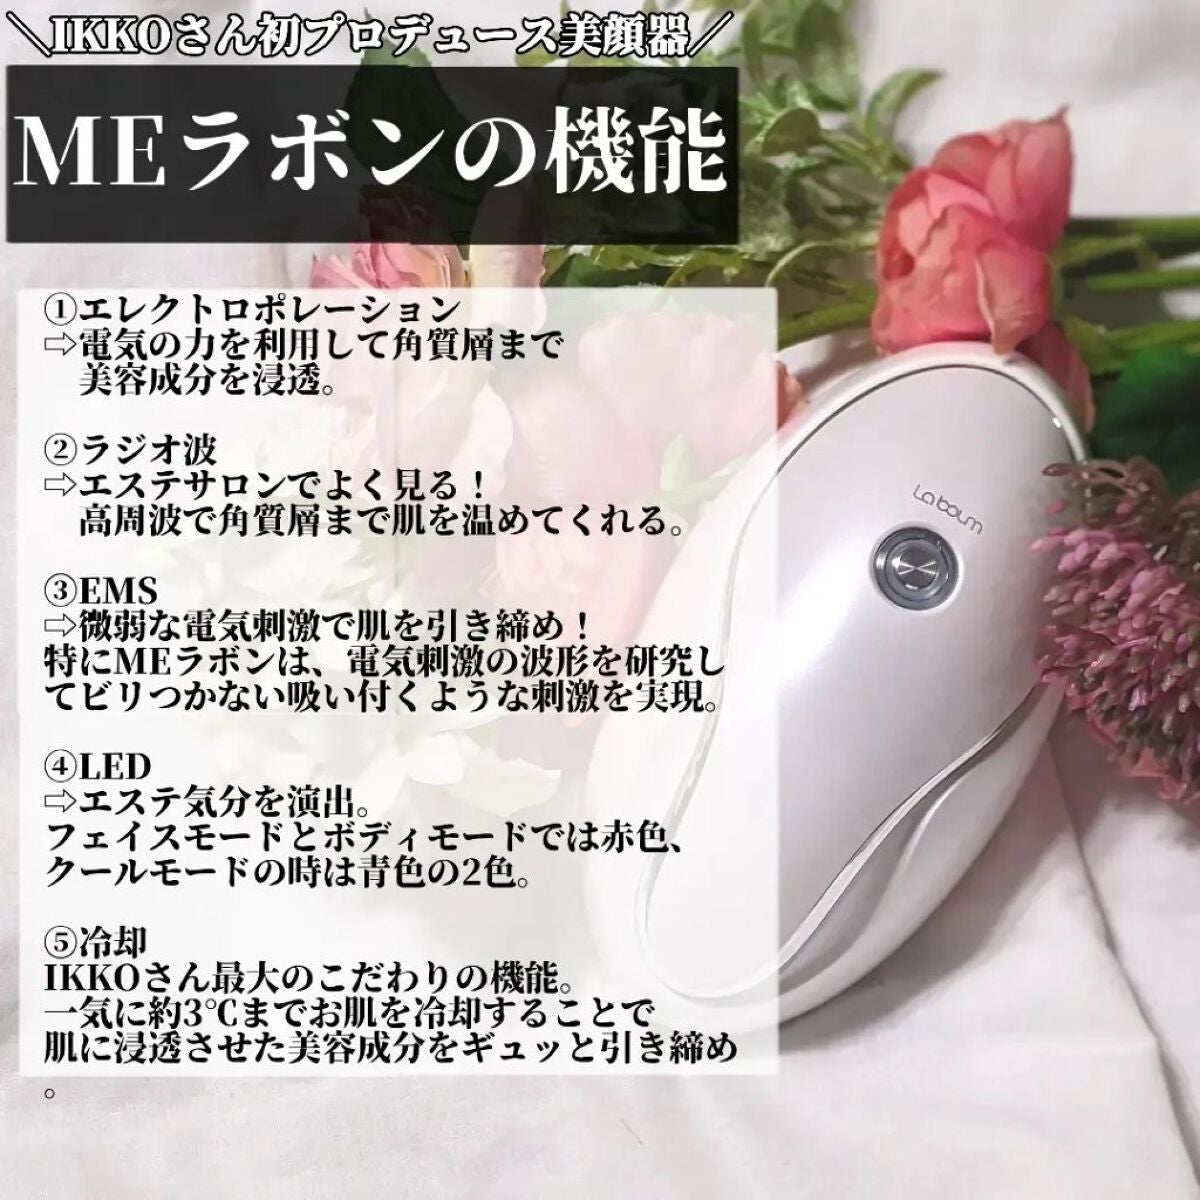 IKKOプロデュース MEラボン 美顔器 EMS RF LED COOL モード - 美容機器